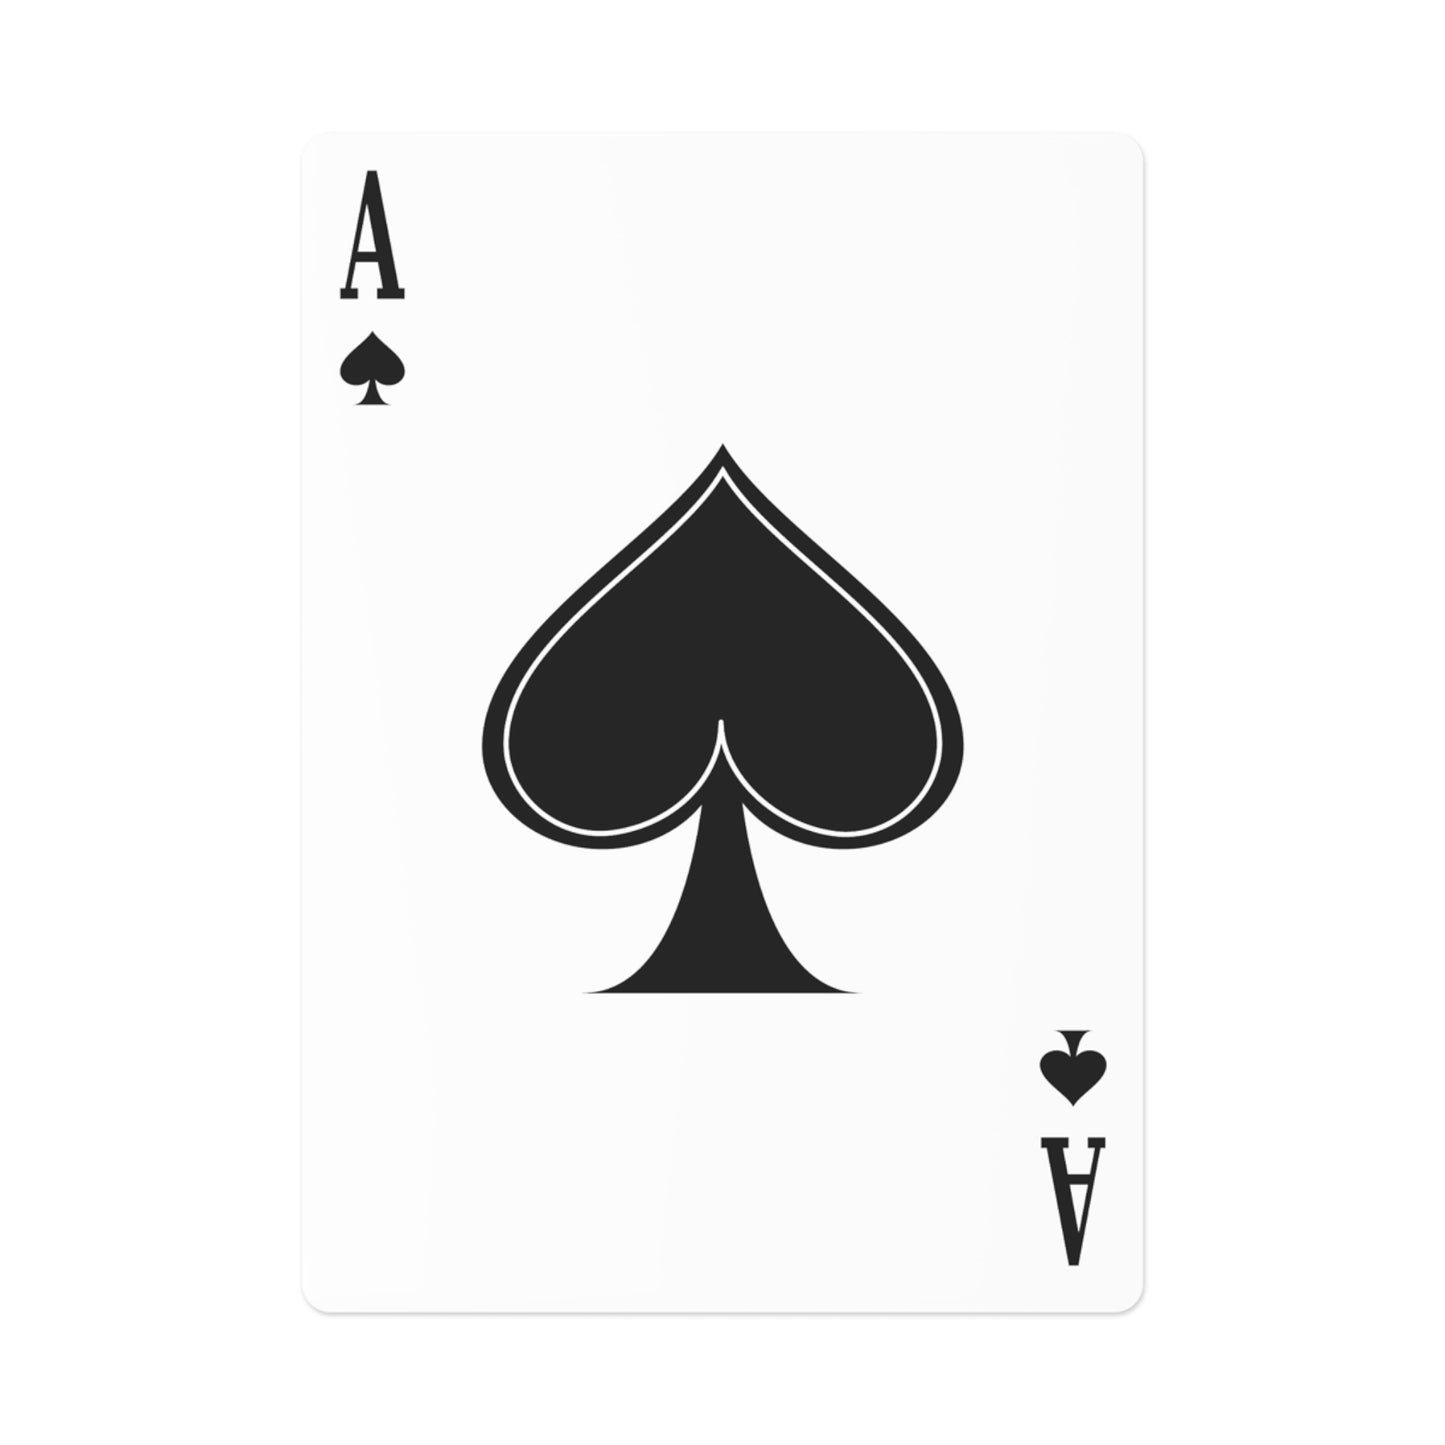 Arlington Row Bibury (Cotswolds) Cartes de poker/cartes à jouer